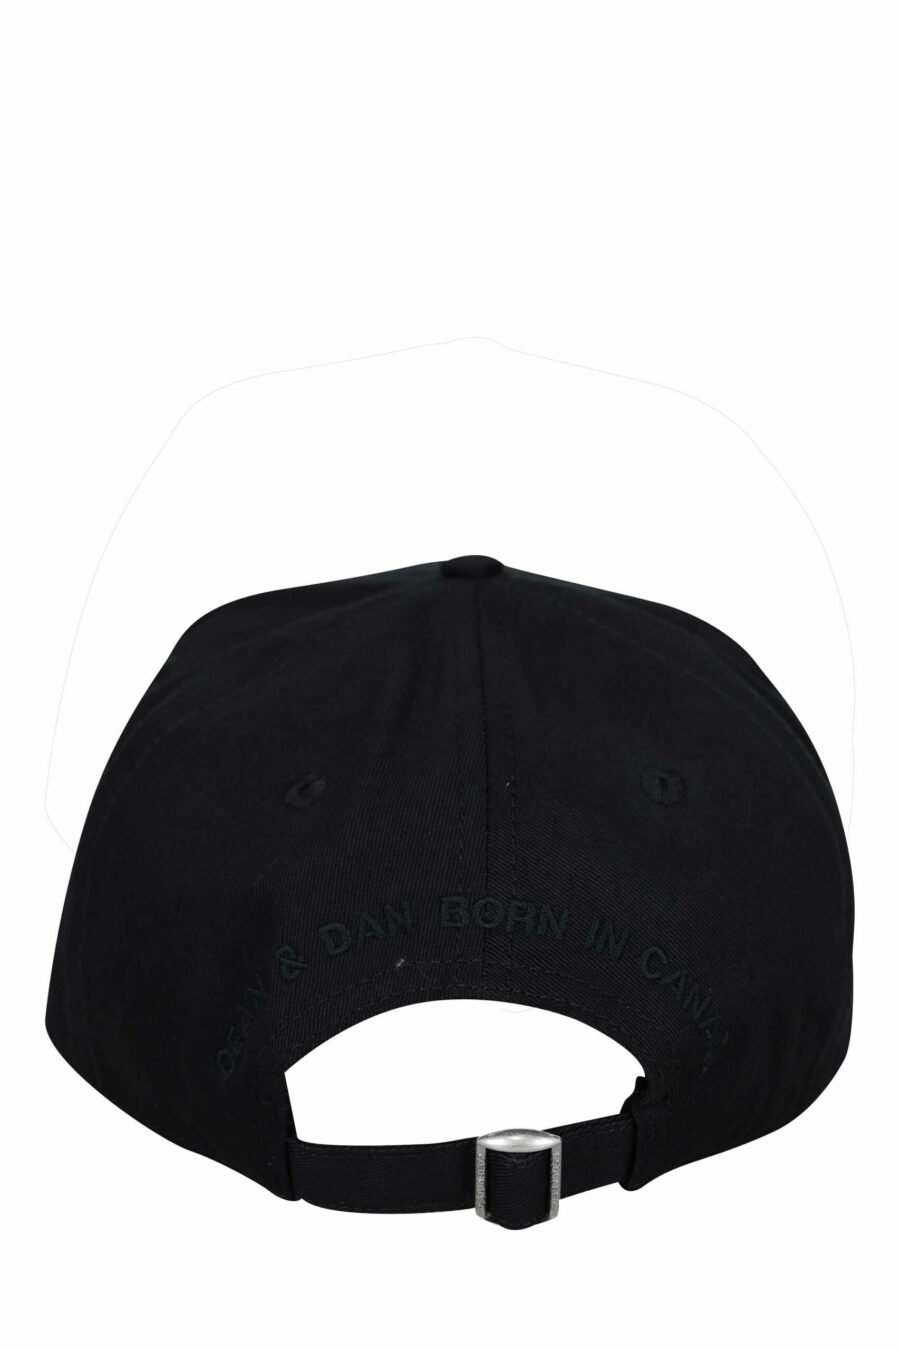 Schwarze Kappe mit einfarbigem Kanada-Logoaufnäher - 8055777160626 1 skaliert